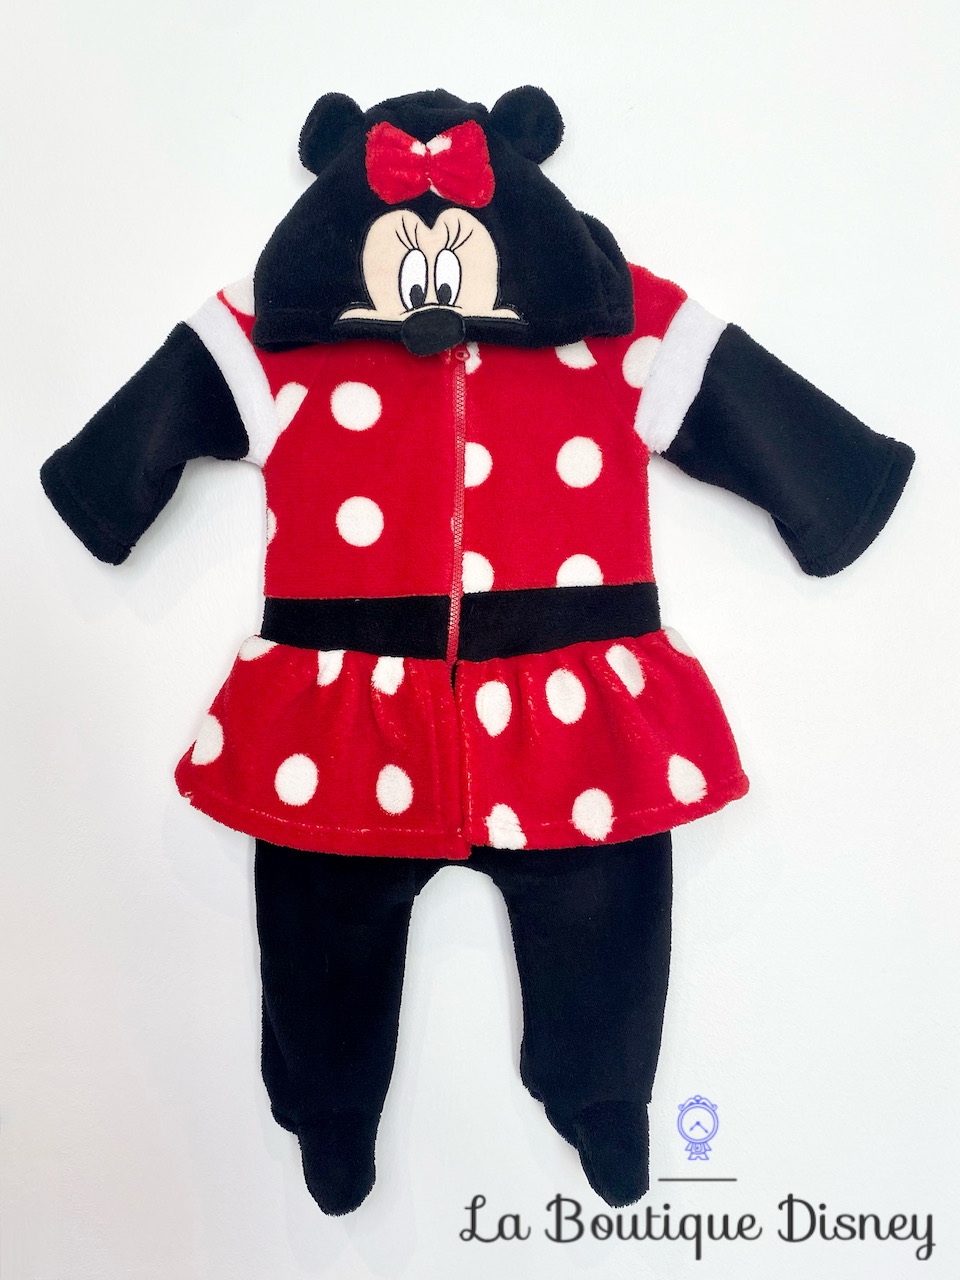 Combinaison Déguisement Minnie Mouse Disney Baby taille 3 mois noir rouge polaire